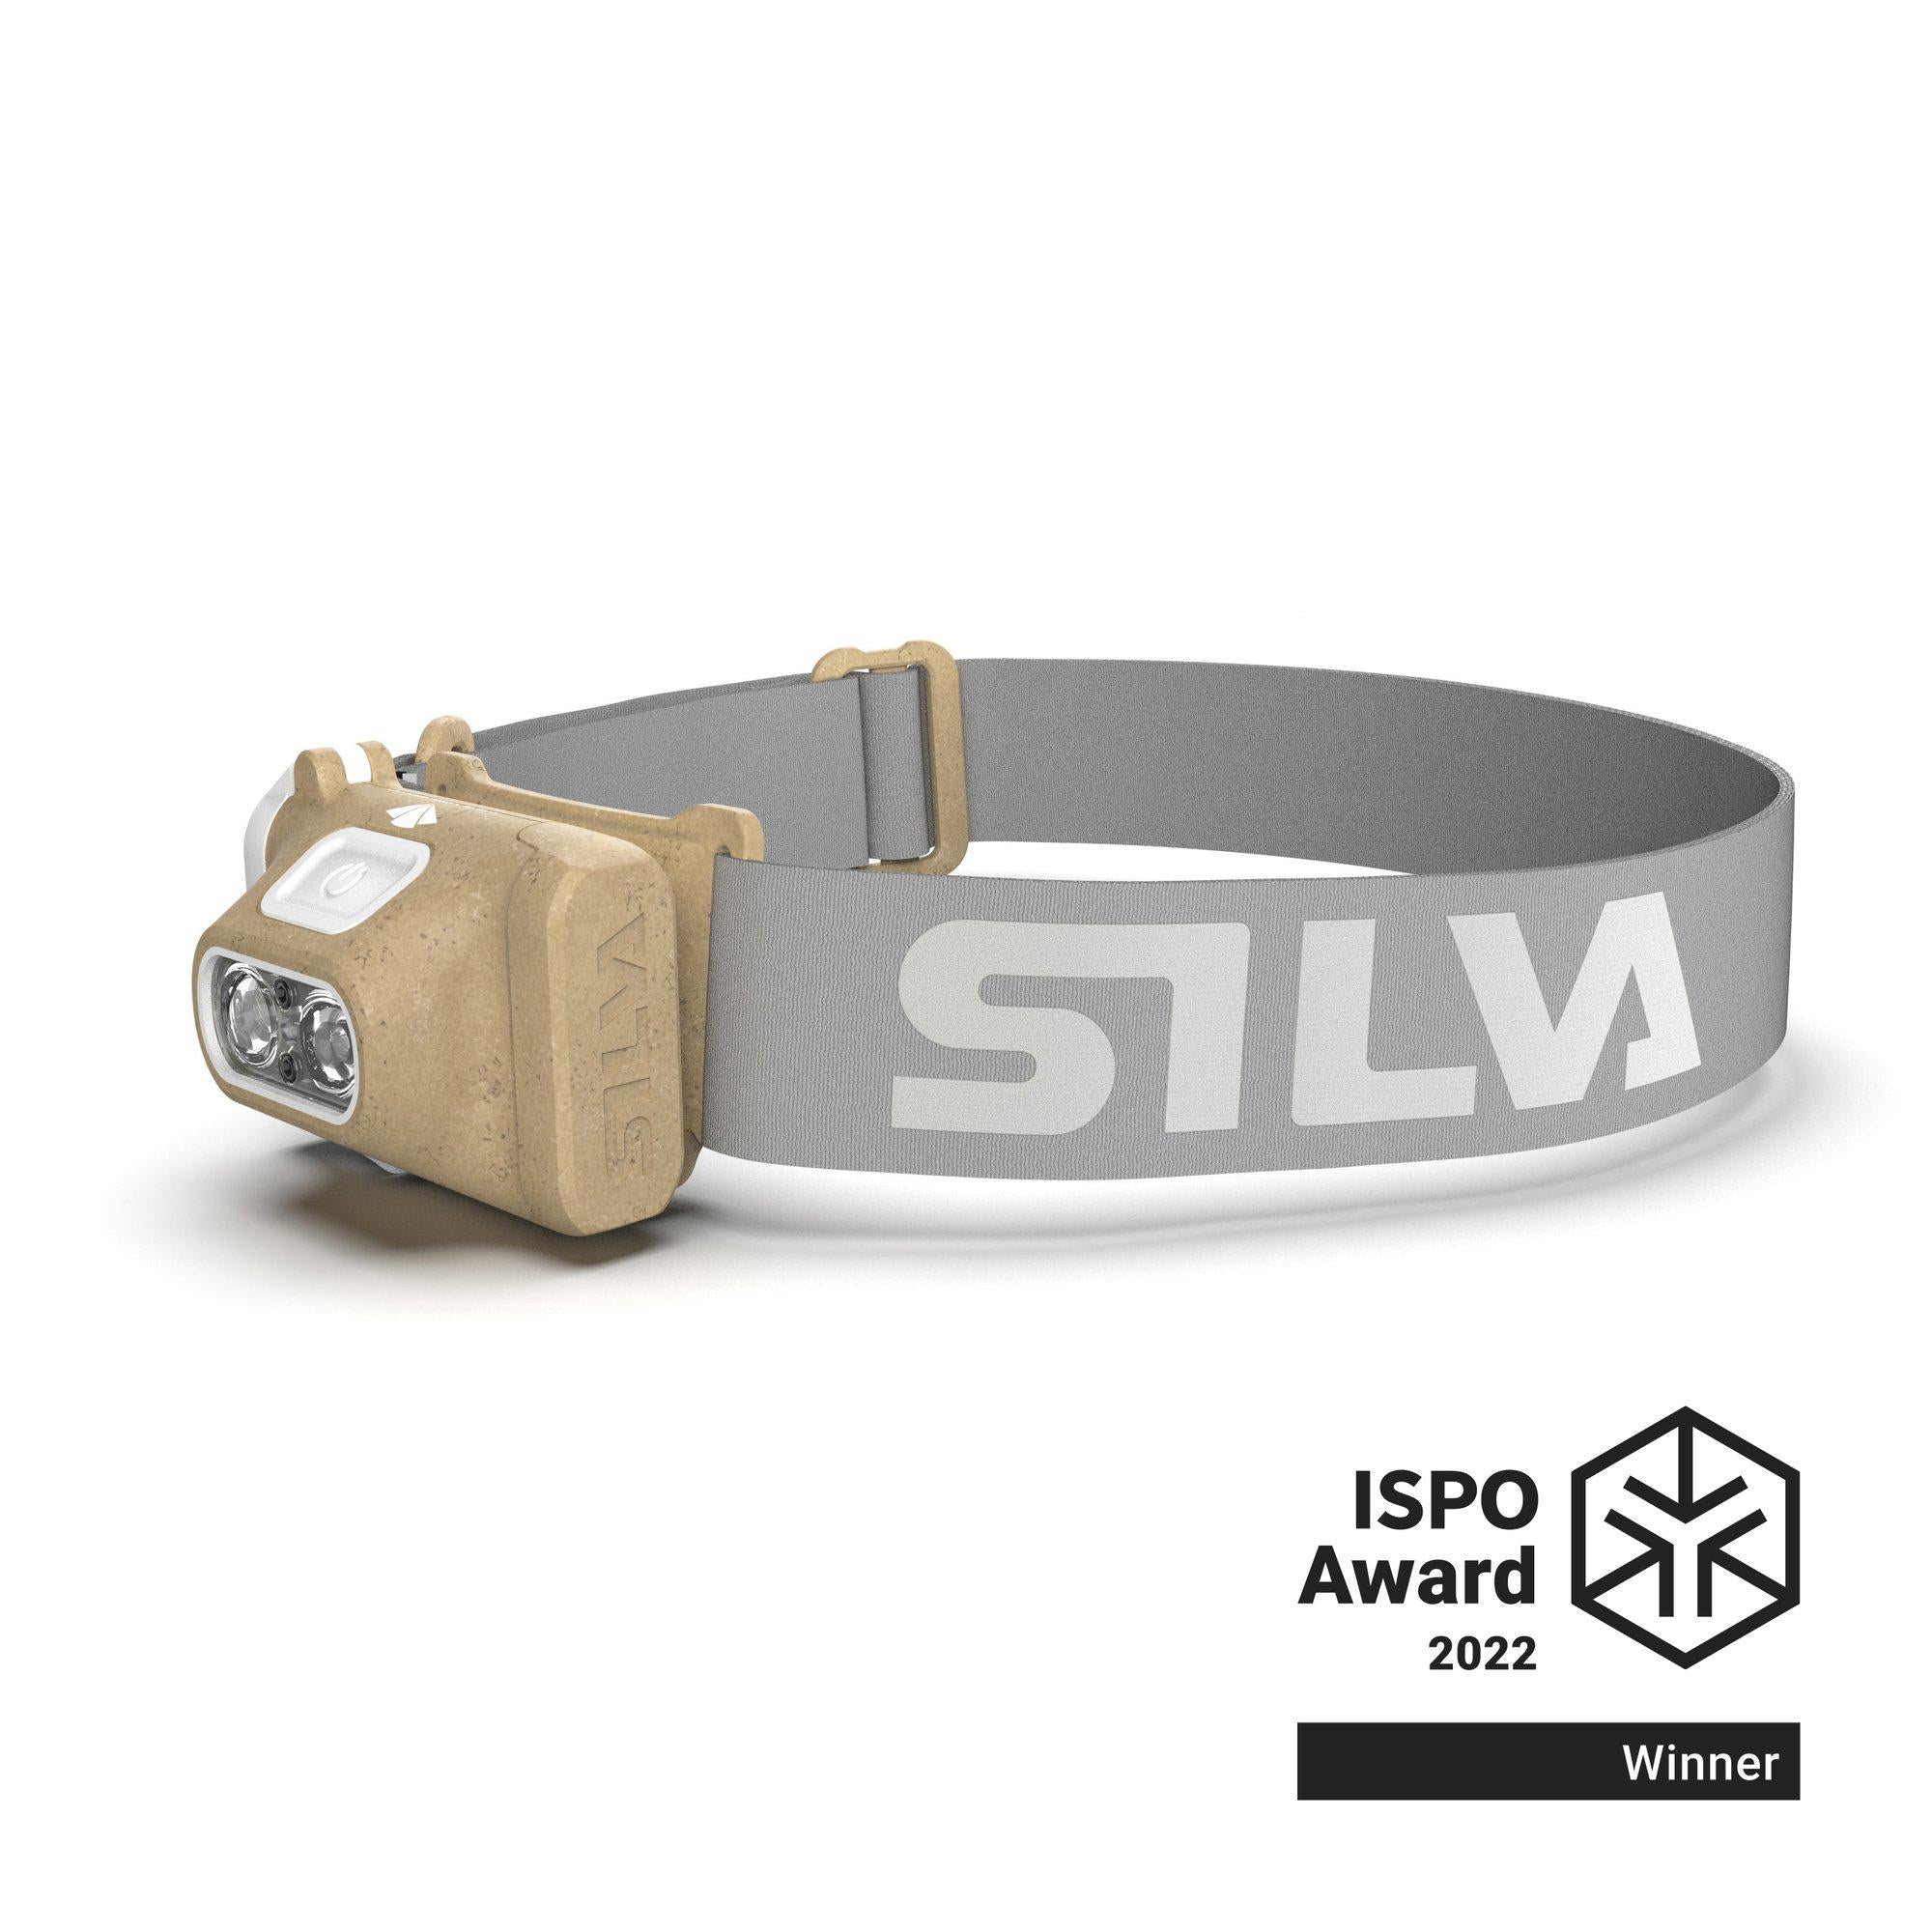 SILVA Scout Ipx5 DofE LED Headlamp 220 Lumens Orange